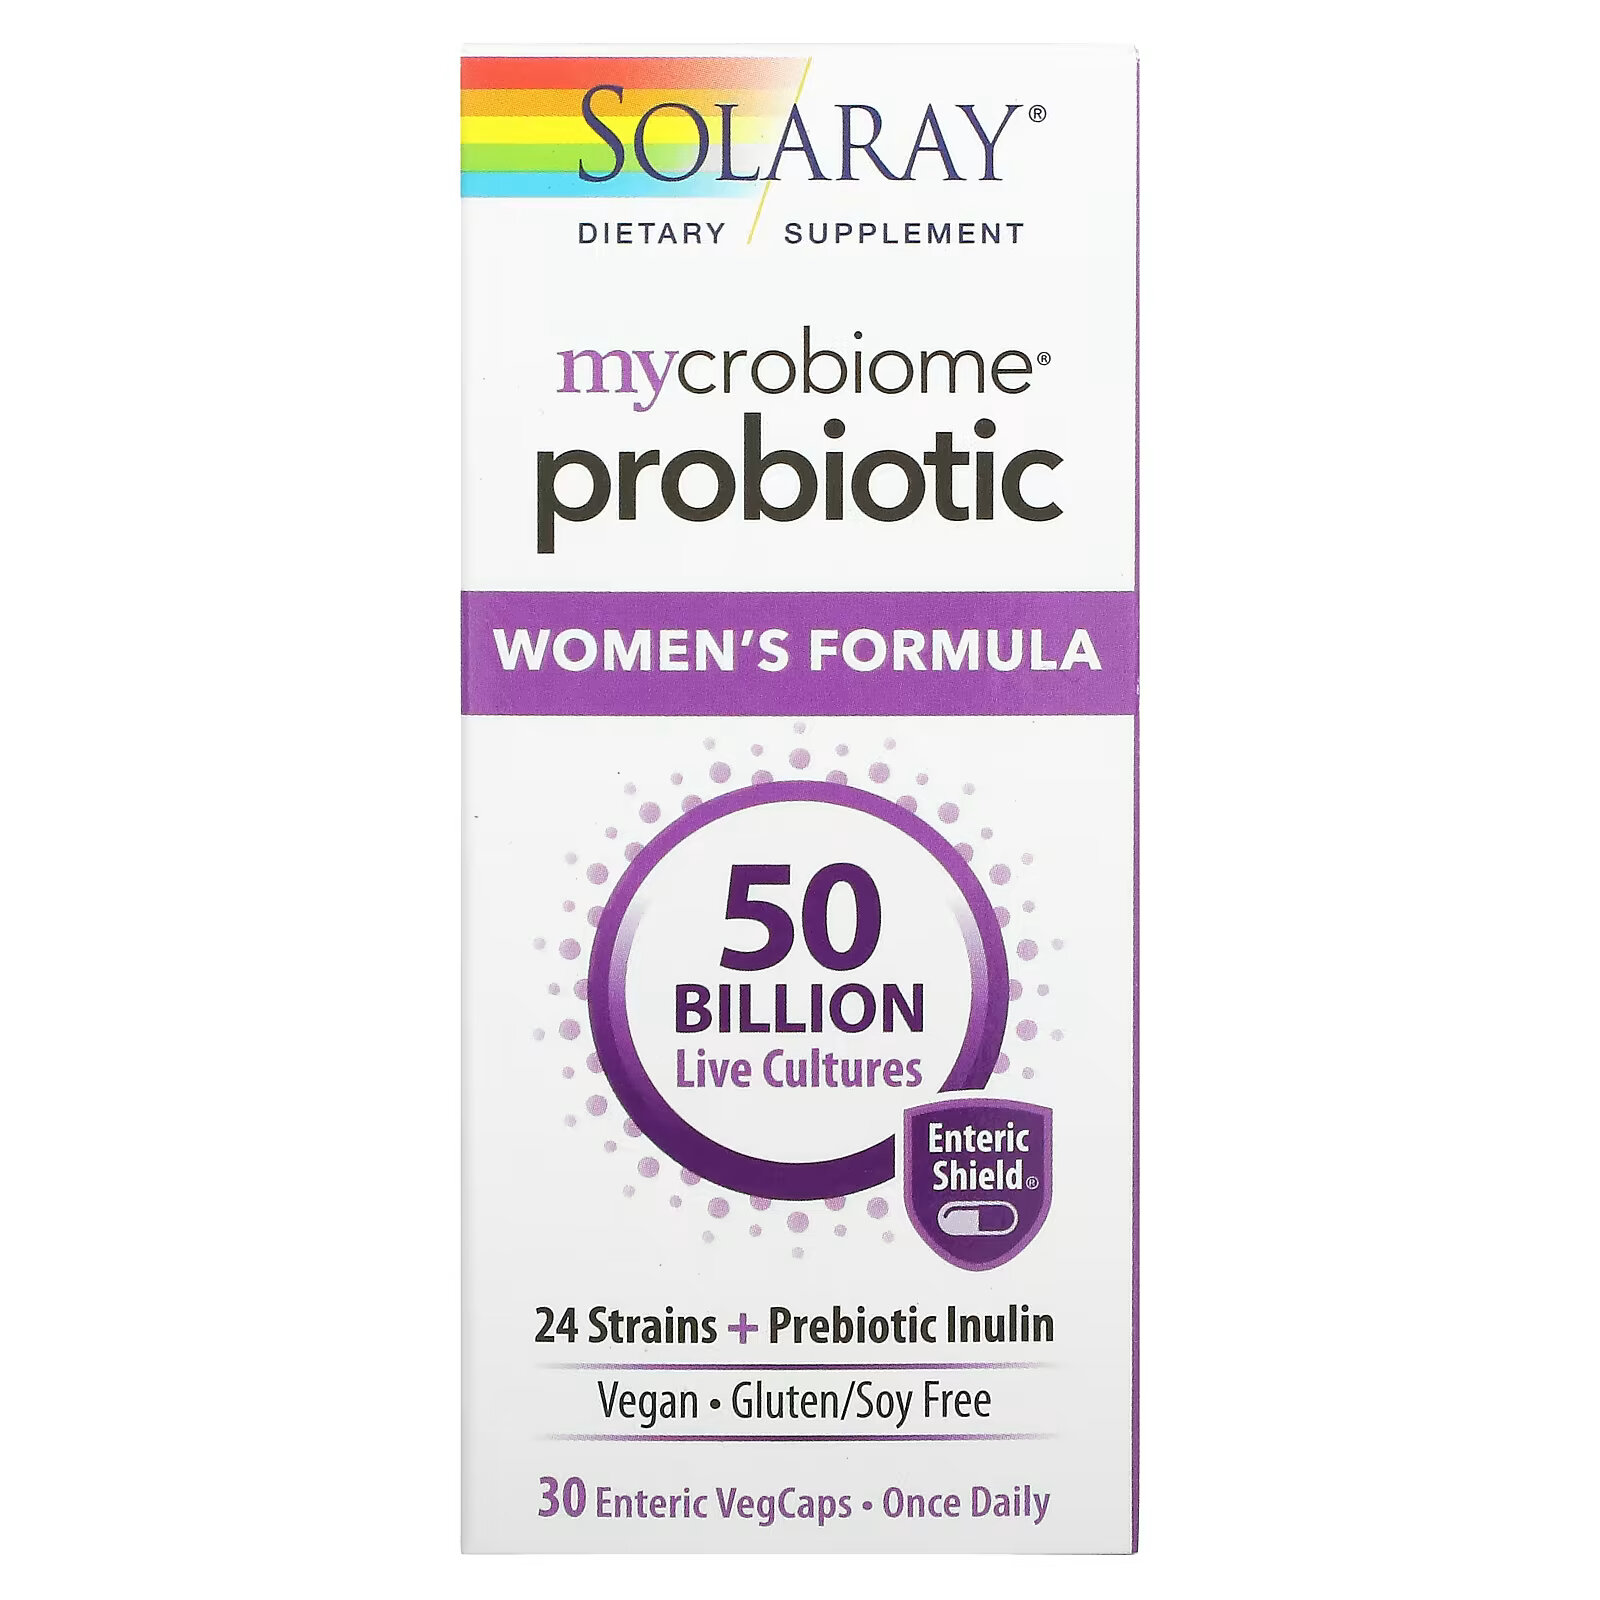 solaray пробиотик mycrobiome для женщин 50 млрд живых культур 30 вегетарианских капсул покрытых кишечнорастворимой оболочкой Solaray, пробиотик Mycrobiome для женщин, 50 млрд живых культур, 30 вегетарианских капсул, покрытых кишечнорастворимой оболочкой